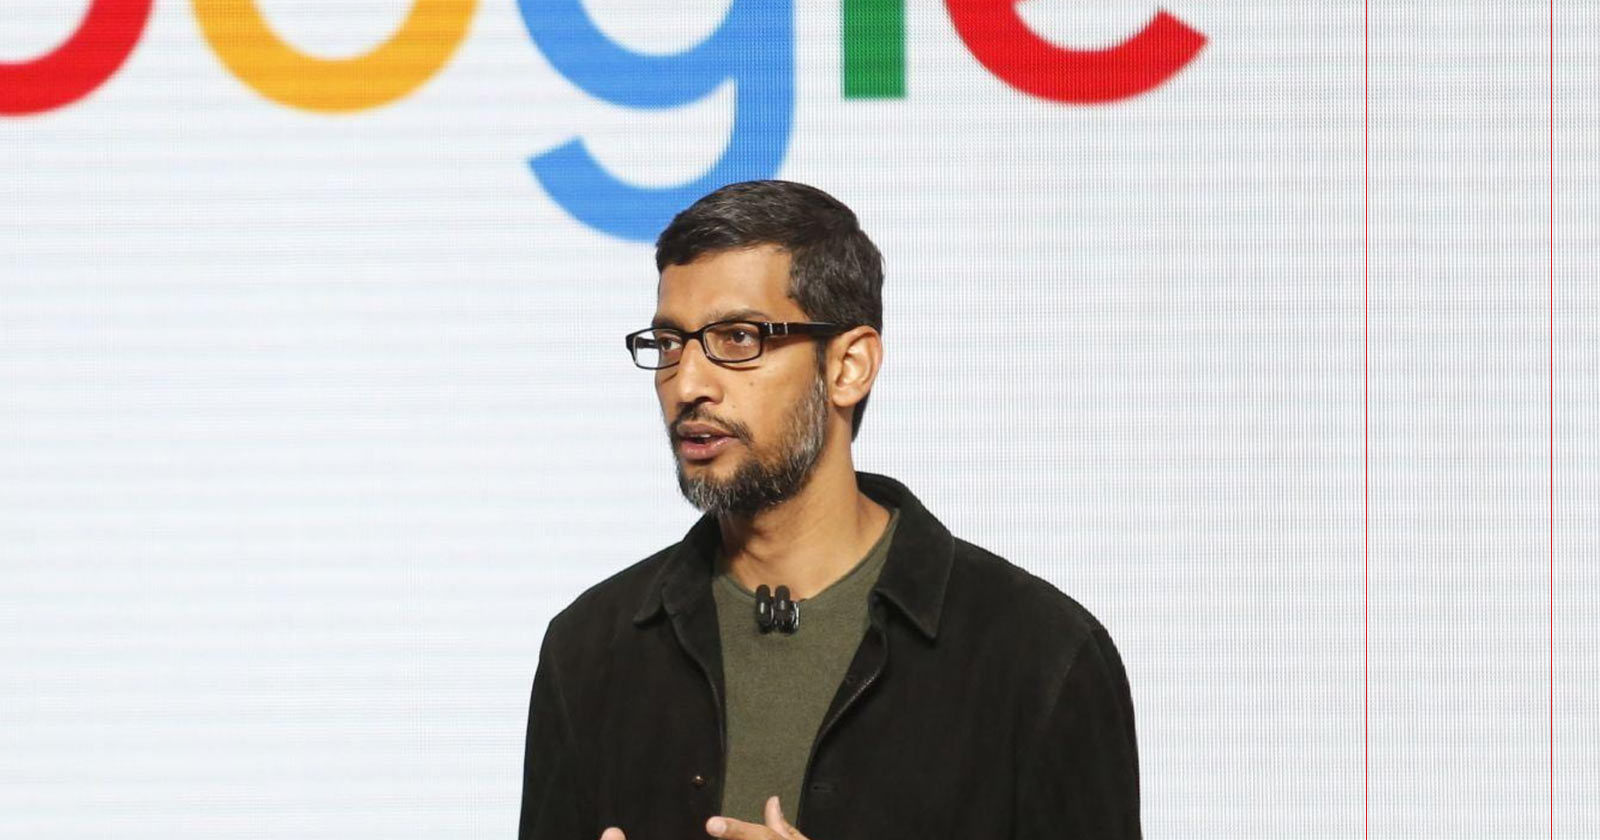 El CEO de Google habla sobre cómo será la búsqueda dentro de 10 años